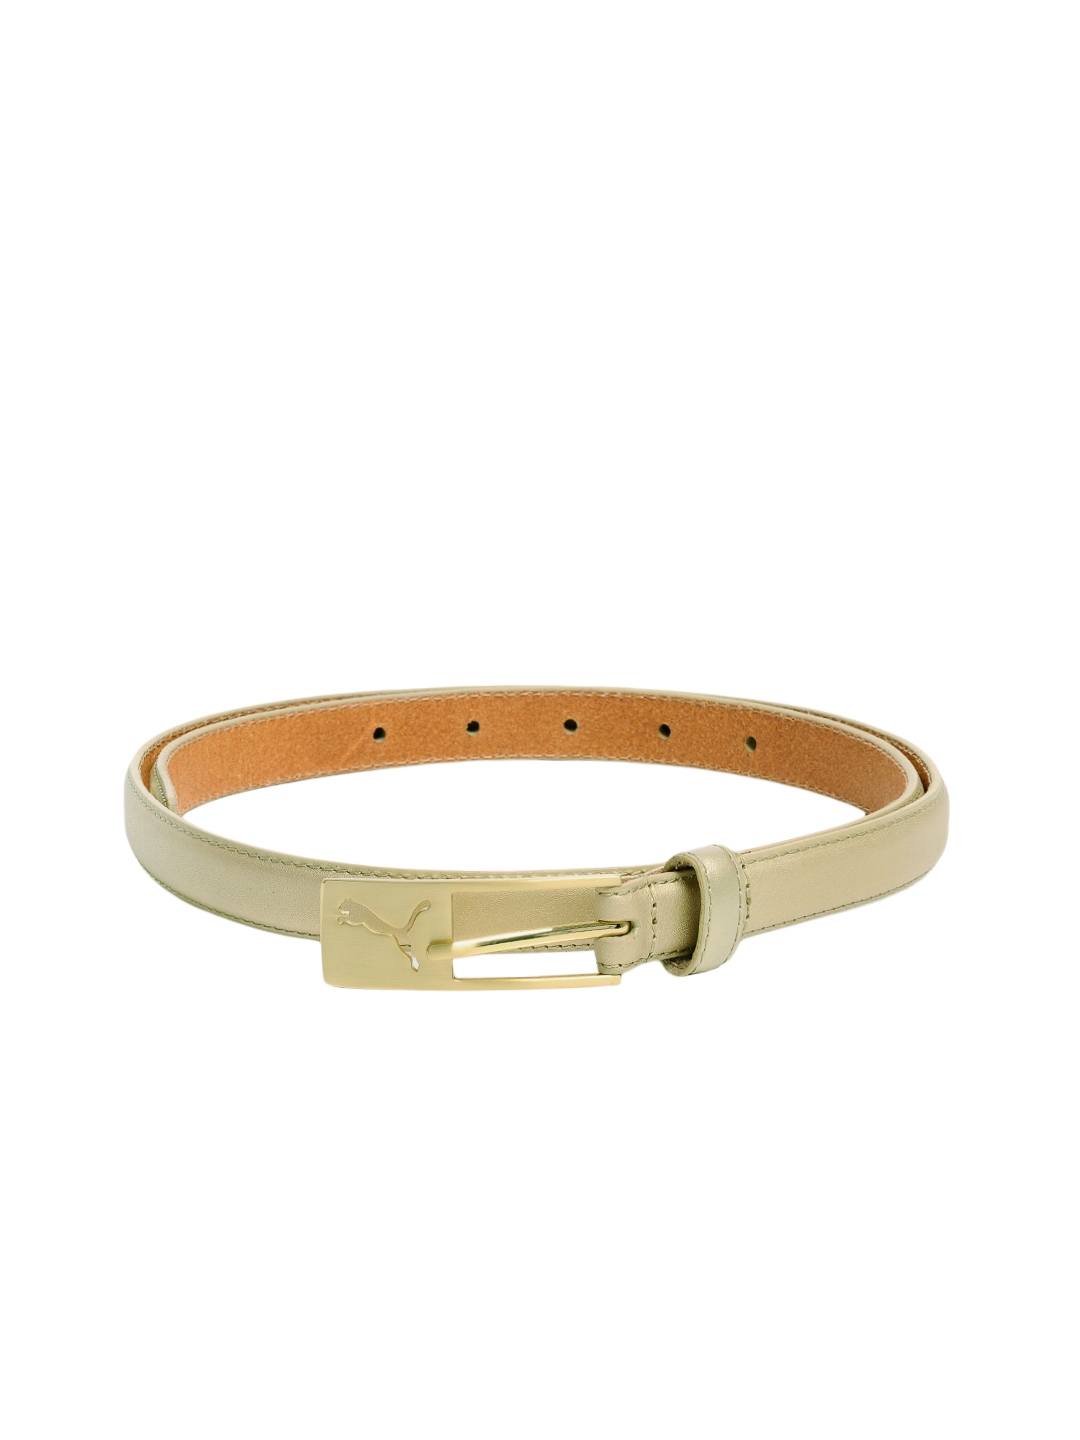 Buy Puma Women Gold Heritage Belt - Belts for Women 96512 | Myntra